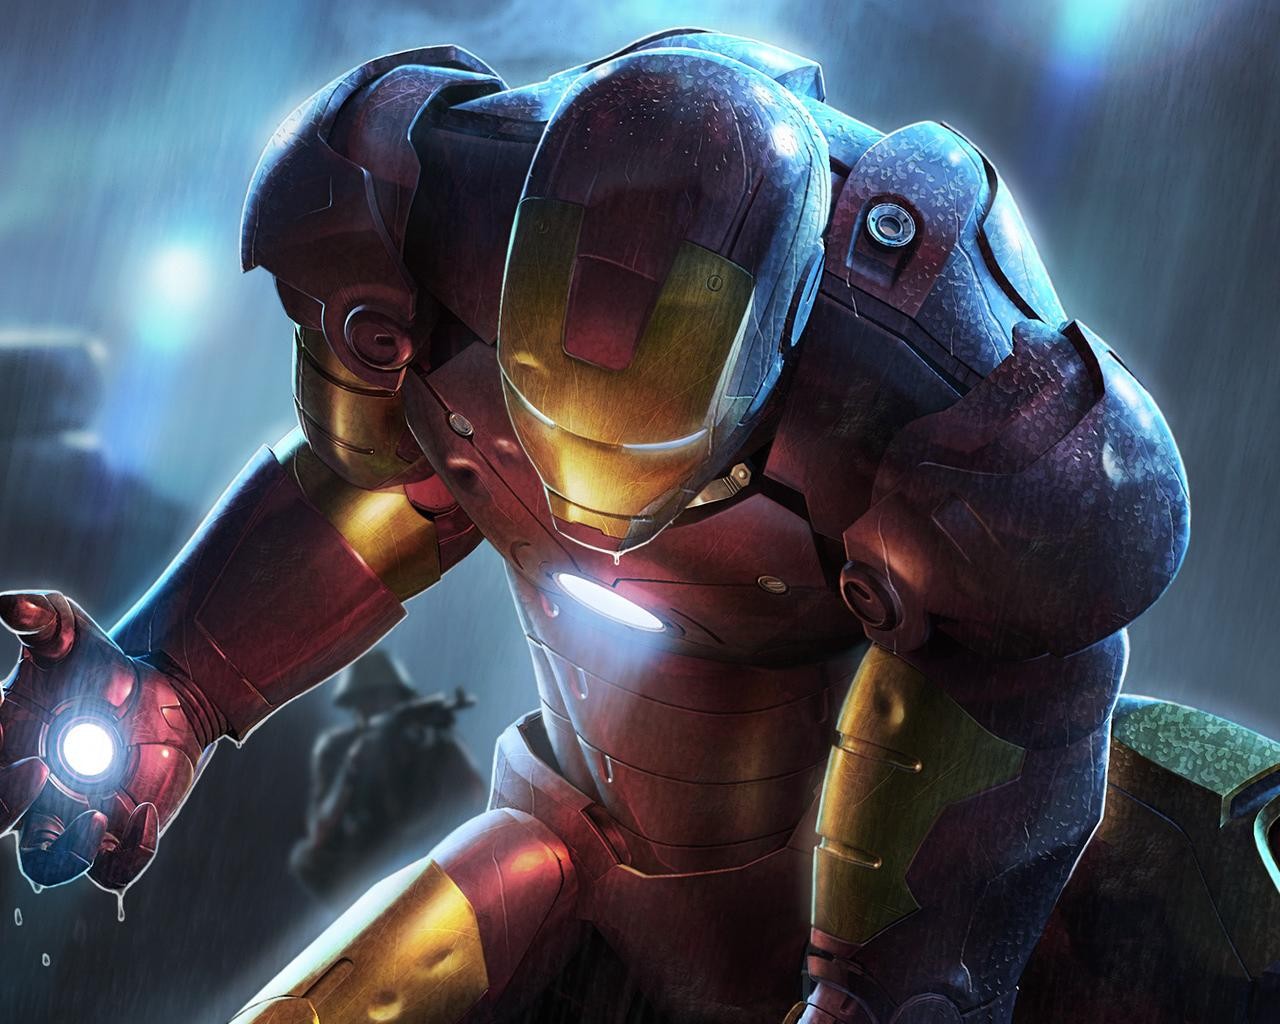 Hình nền Iron Man cao cấp HD là một lựa chọn hoàn hảo cho nền máy tính hoặc di động của bạn. Chất lượng hình ảnh tuyệt vời cùng với độ phân giải cao sẽ khiến bạn trải nghiệm một màn hình sống động và sáng tạo. Hãy trải nghiệm ngay bây giờ!